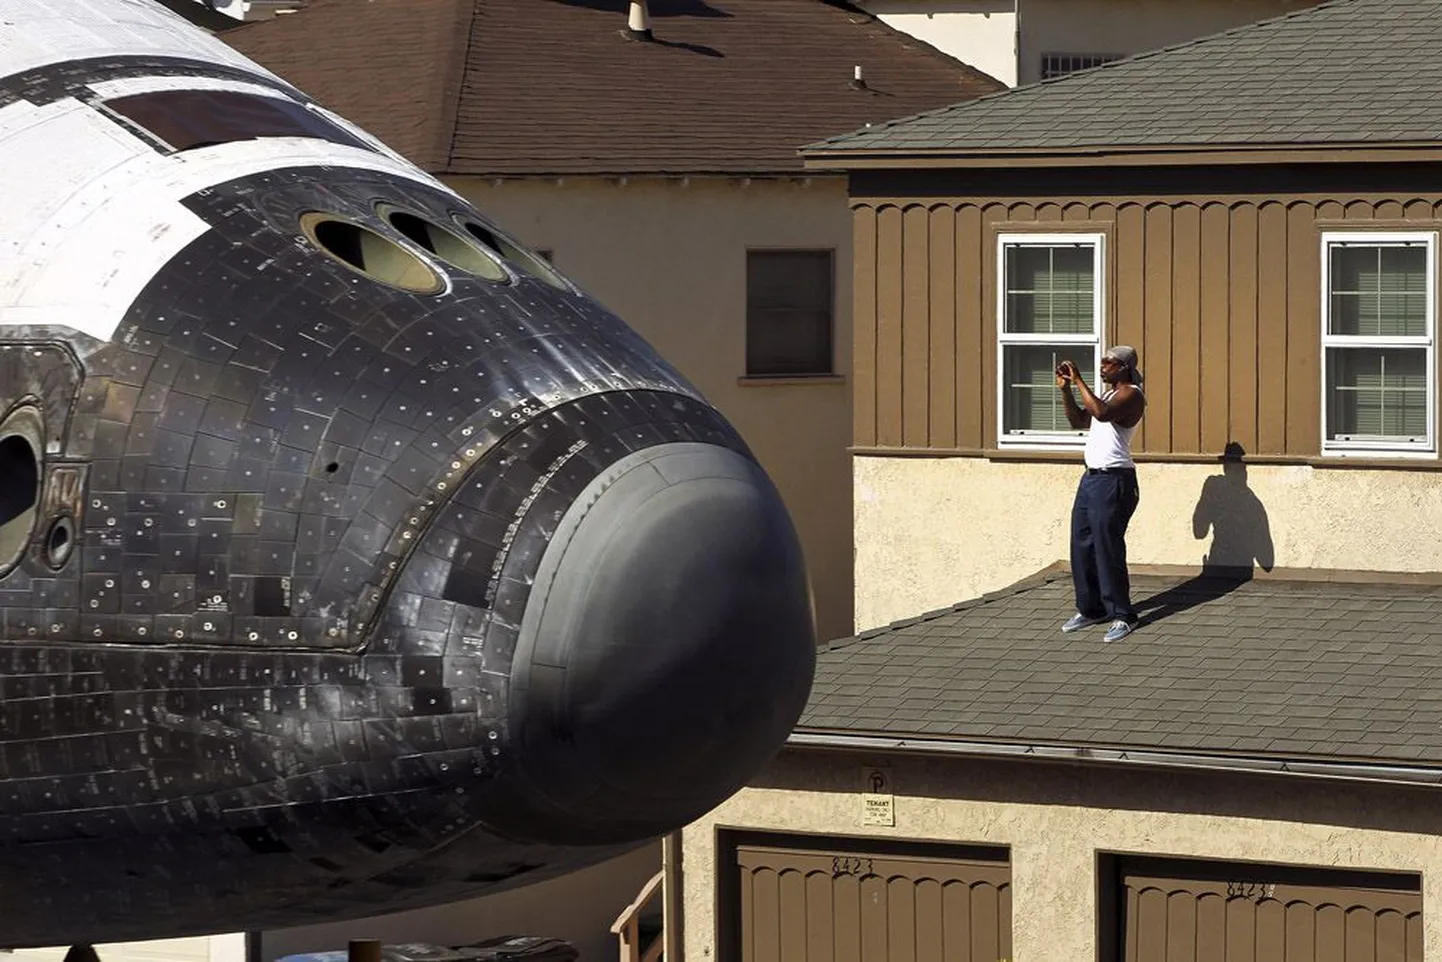 USA kosmosesüstiku Endeavour viimane reis viis teeneka lennumasina tuhandete inimeste pilkude saatel läbi Los Angelese linna.